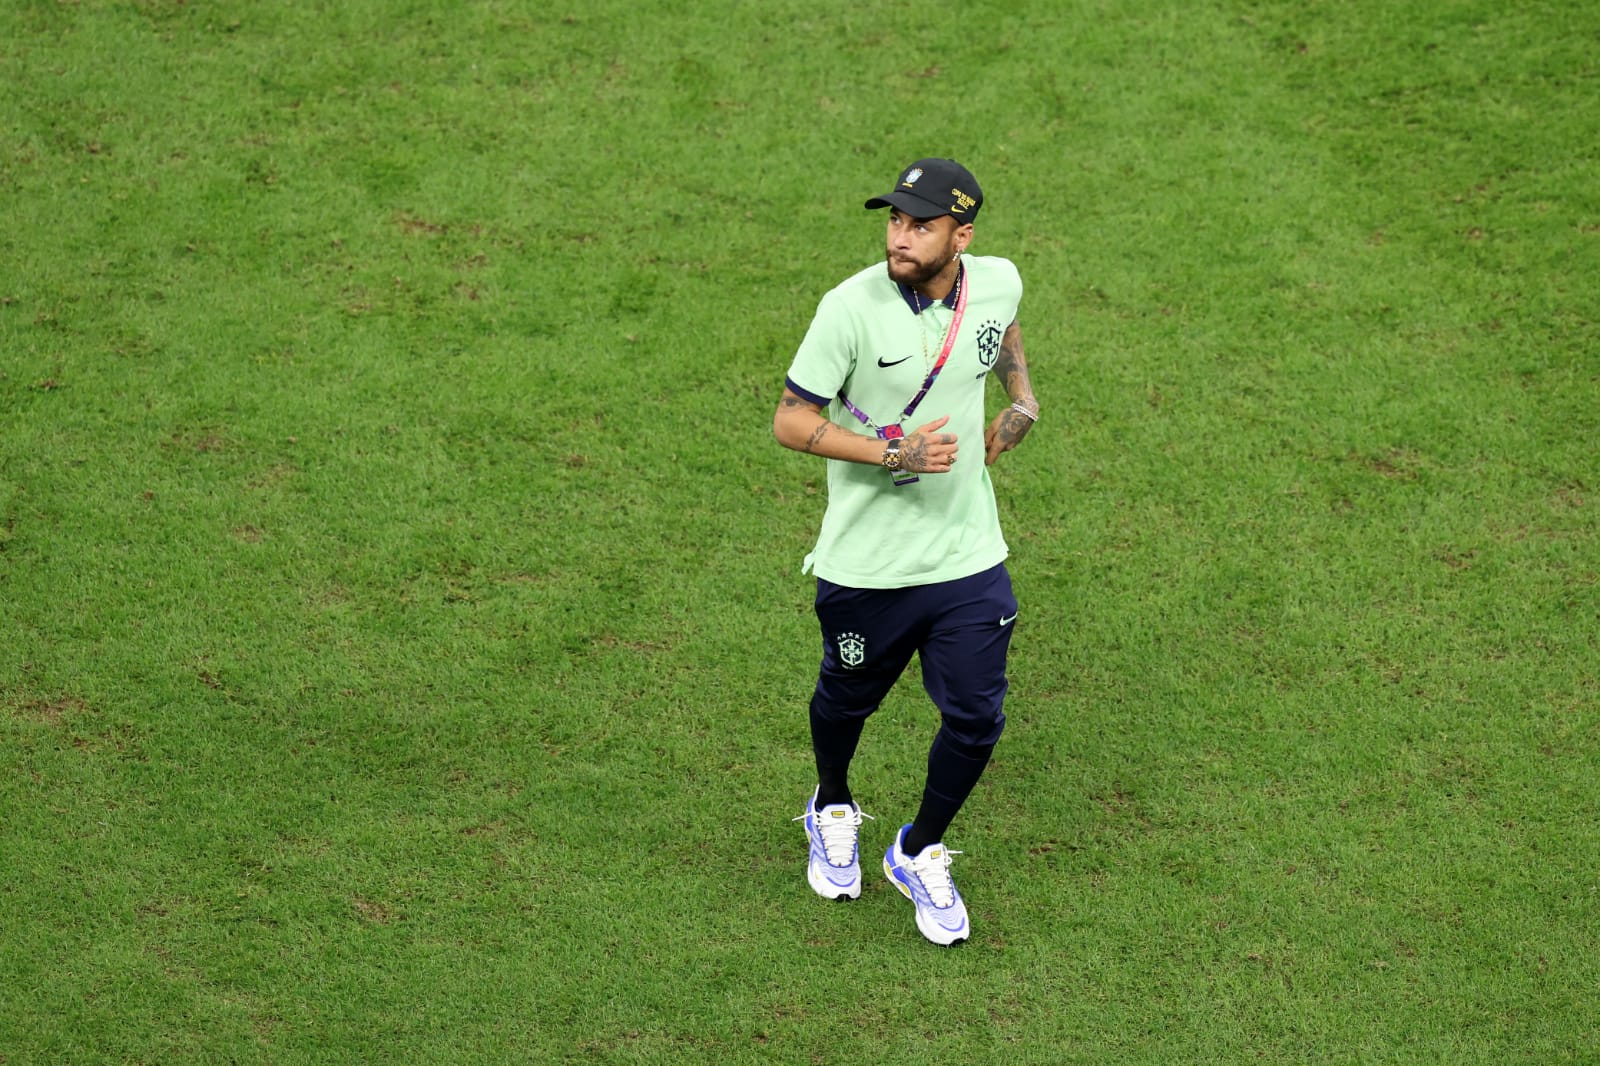 Seleção Brasileira inicia preparação para pegar Coreia do Sul; Neymar retorna ao CT